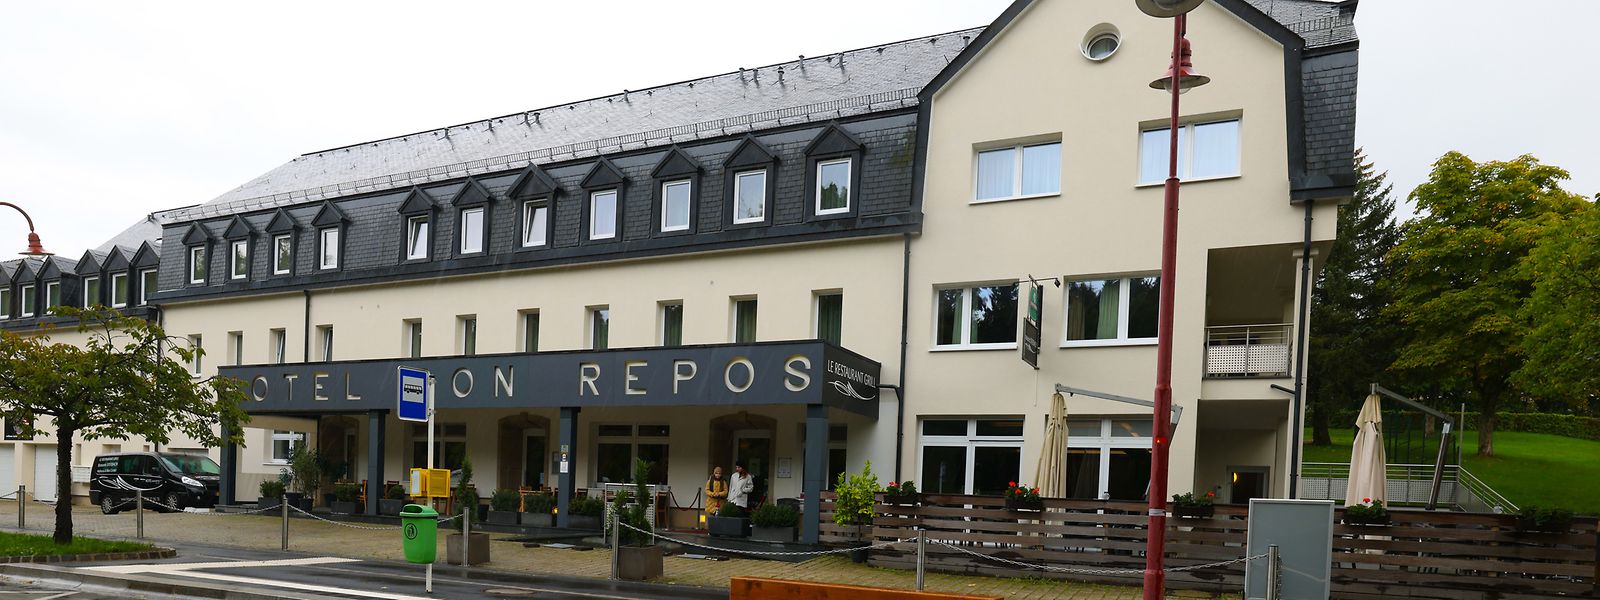 Das Hotel Bon Repos in Scheidgen steht zum Verkauf. Für viel Aufregung sorgte die Ankündigung, es sollte zu einem Flüchtlingsheim werden.  